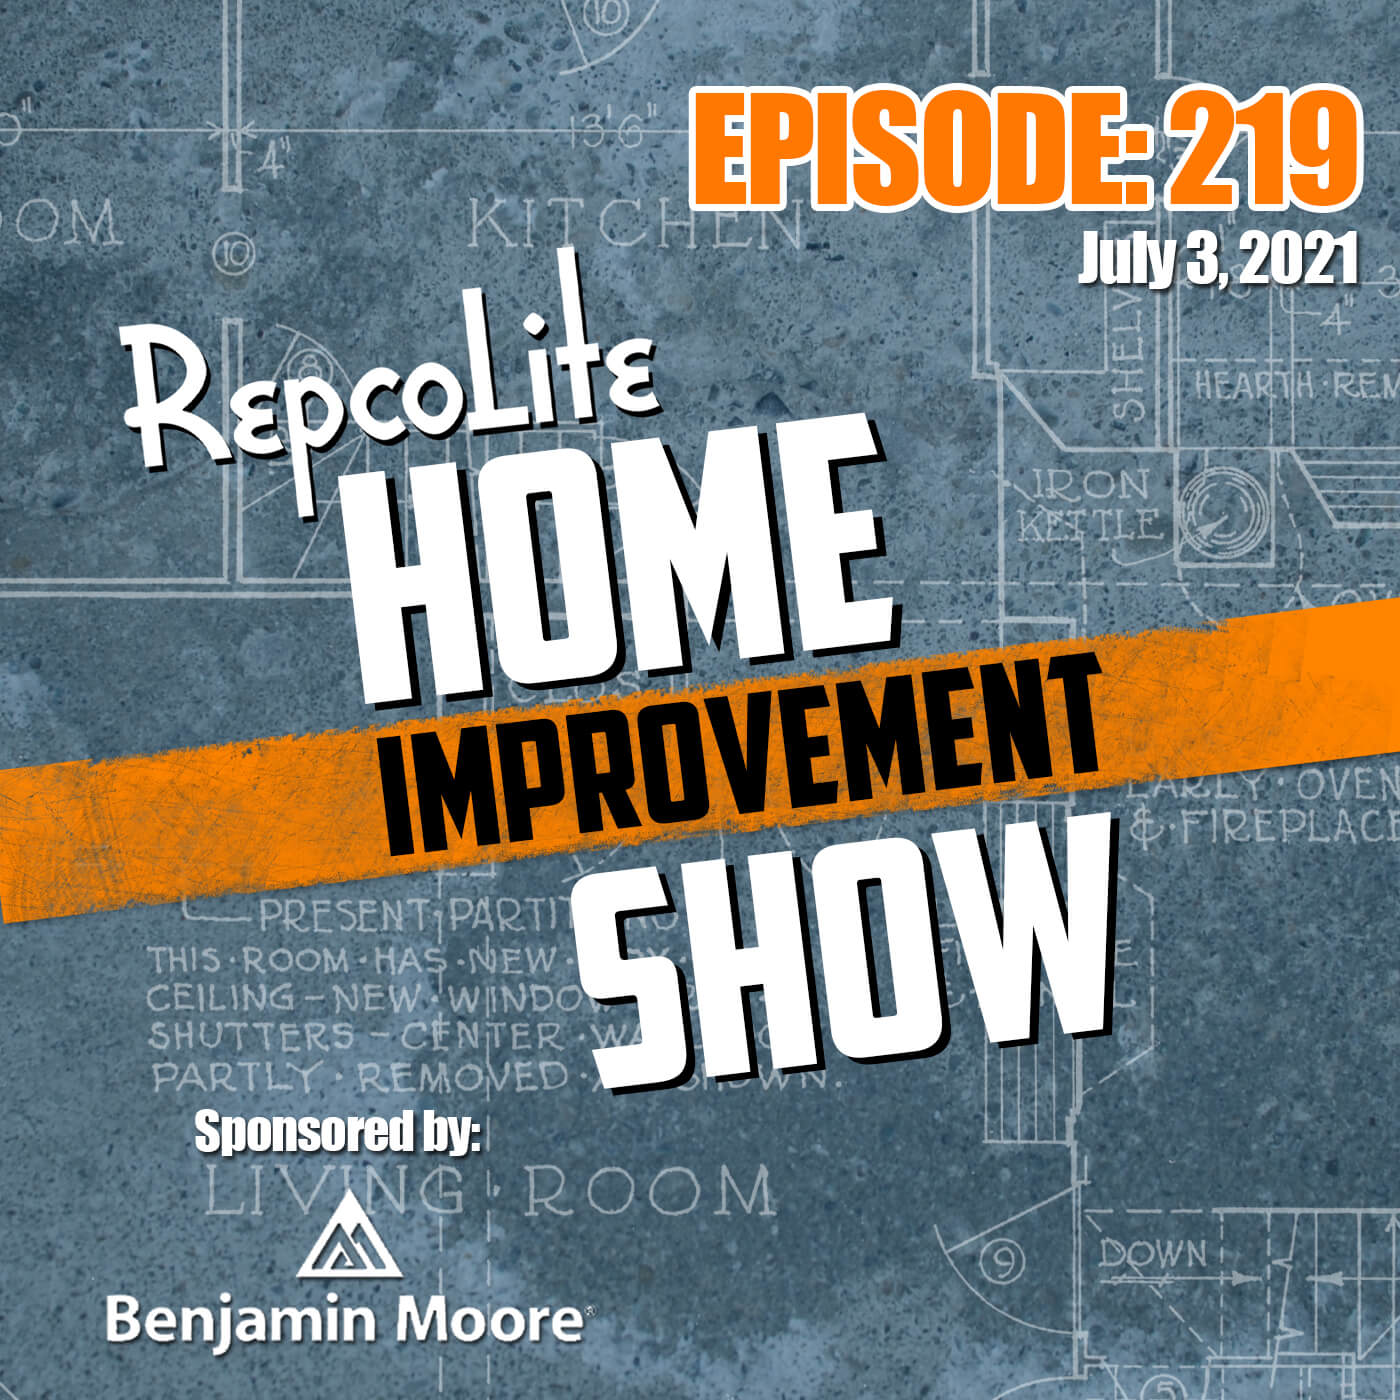 Artwork for podcast RepcoLite Home Improvement Show